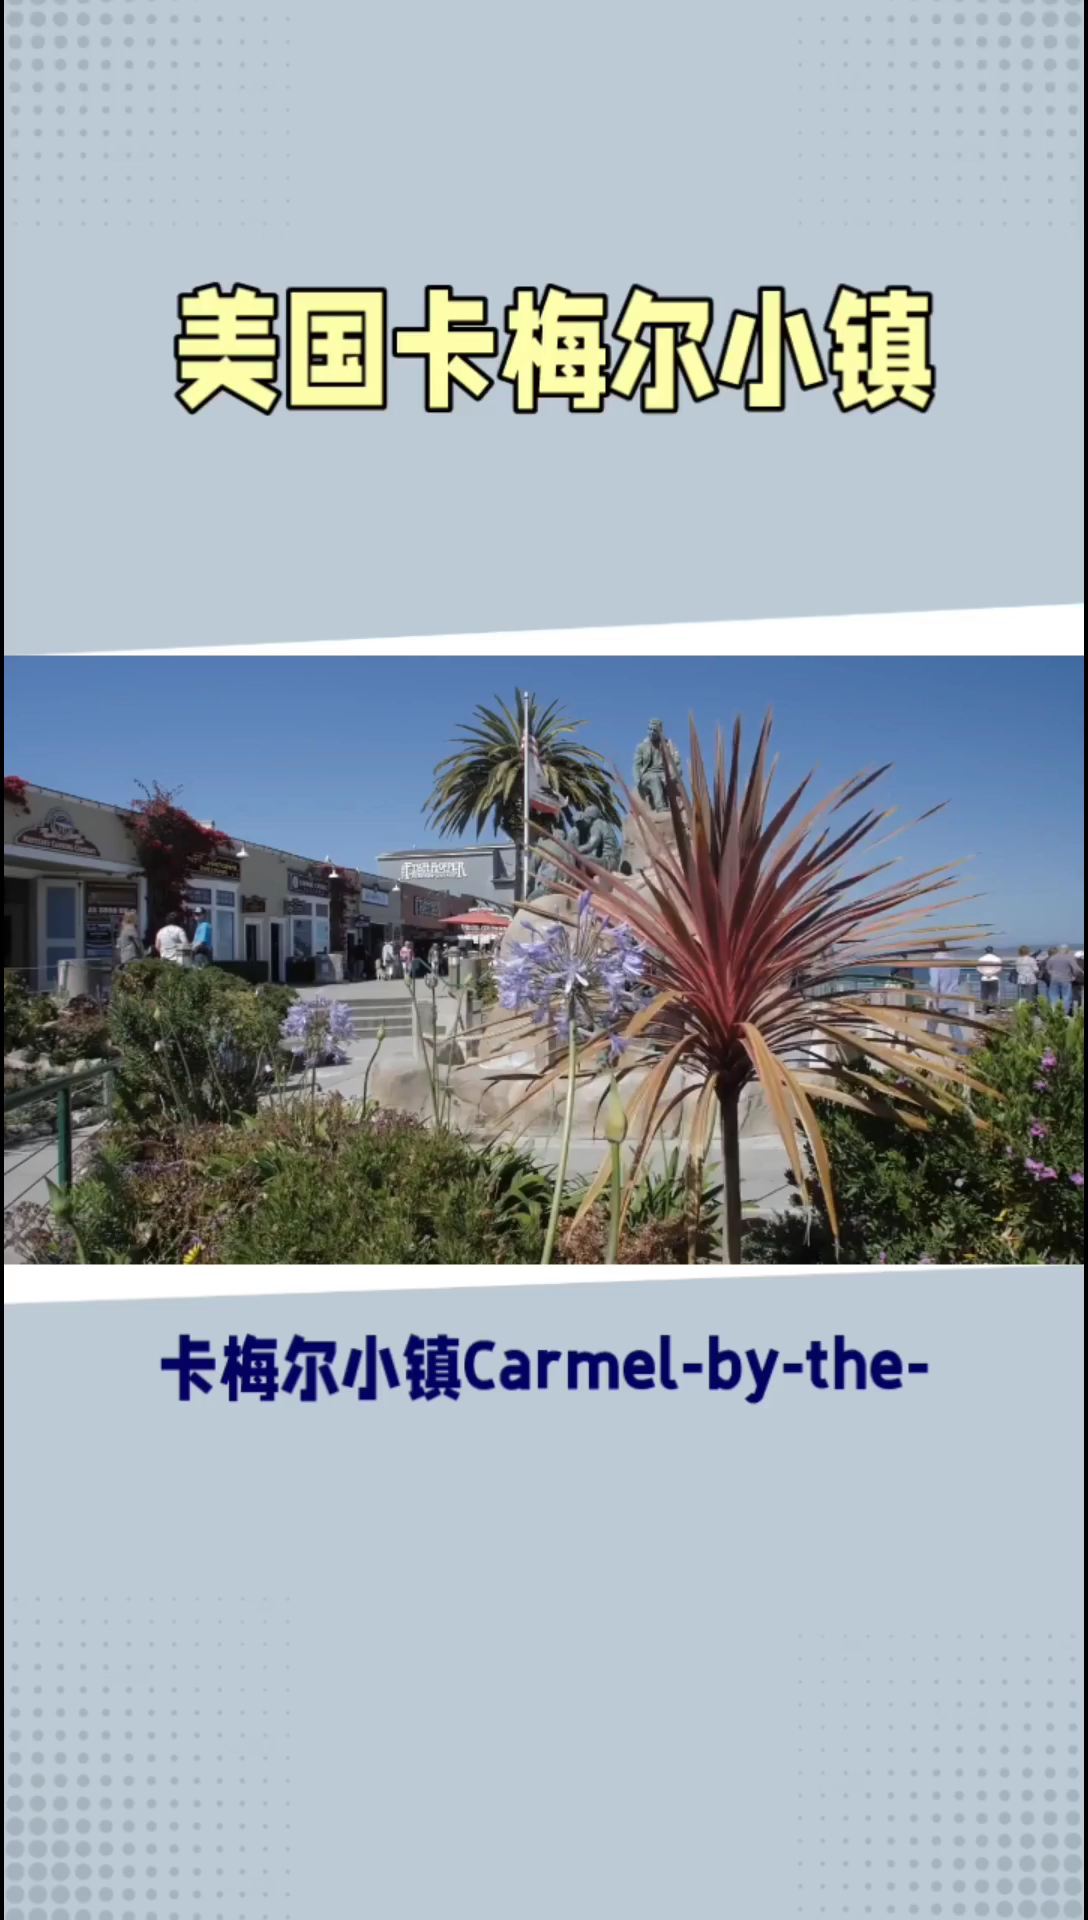 卡梅尔小镇：壮丽海滨与独特文化的美妙融合